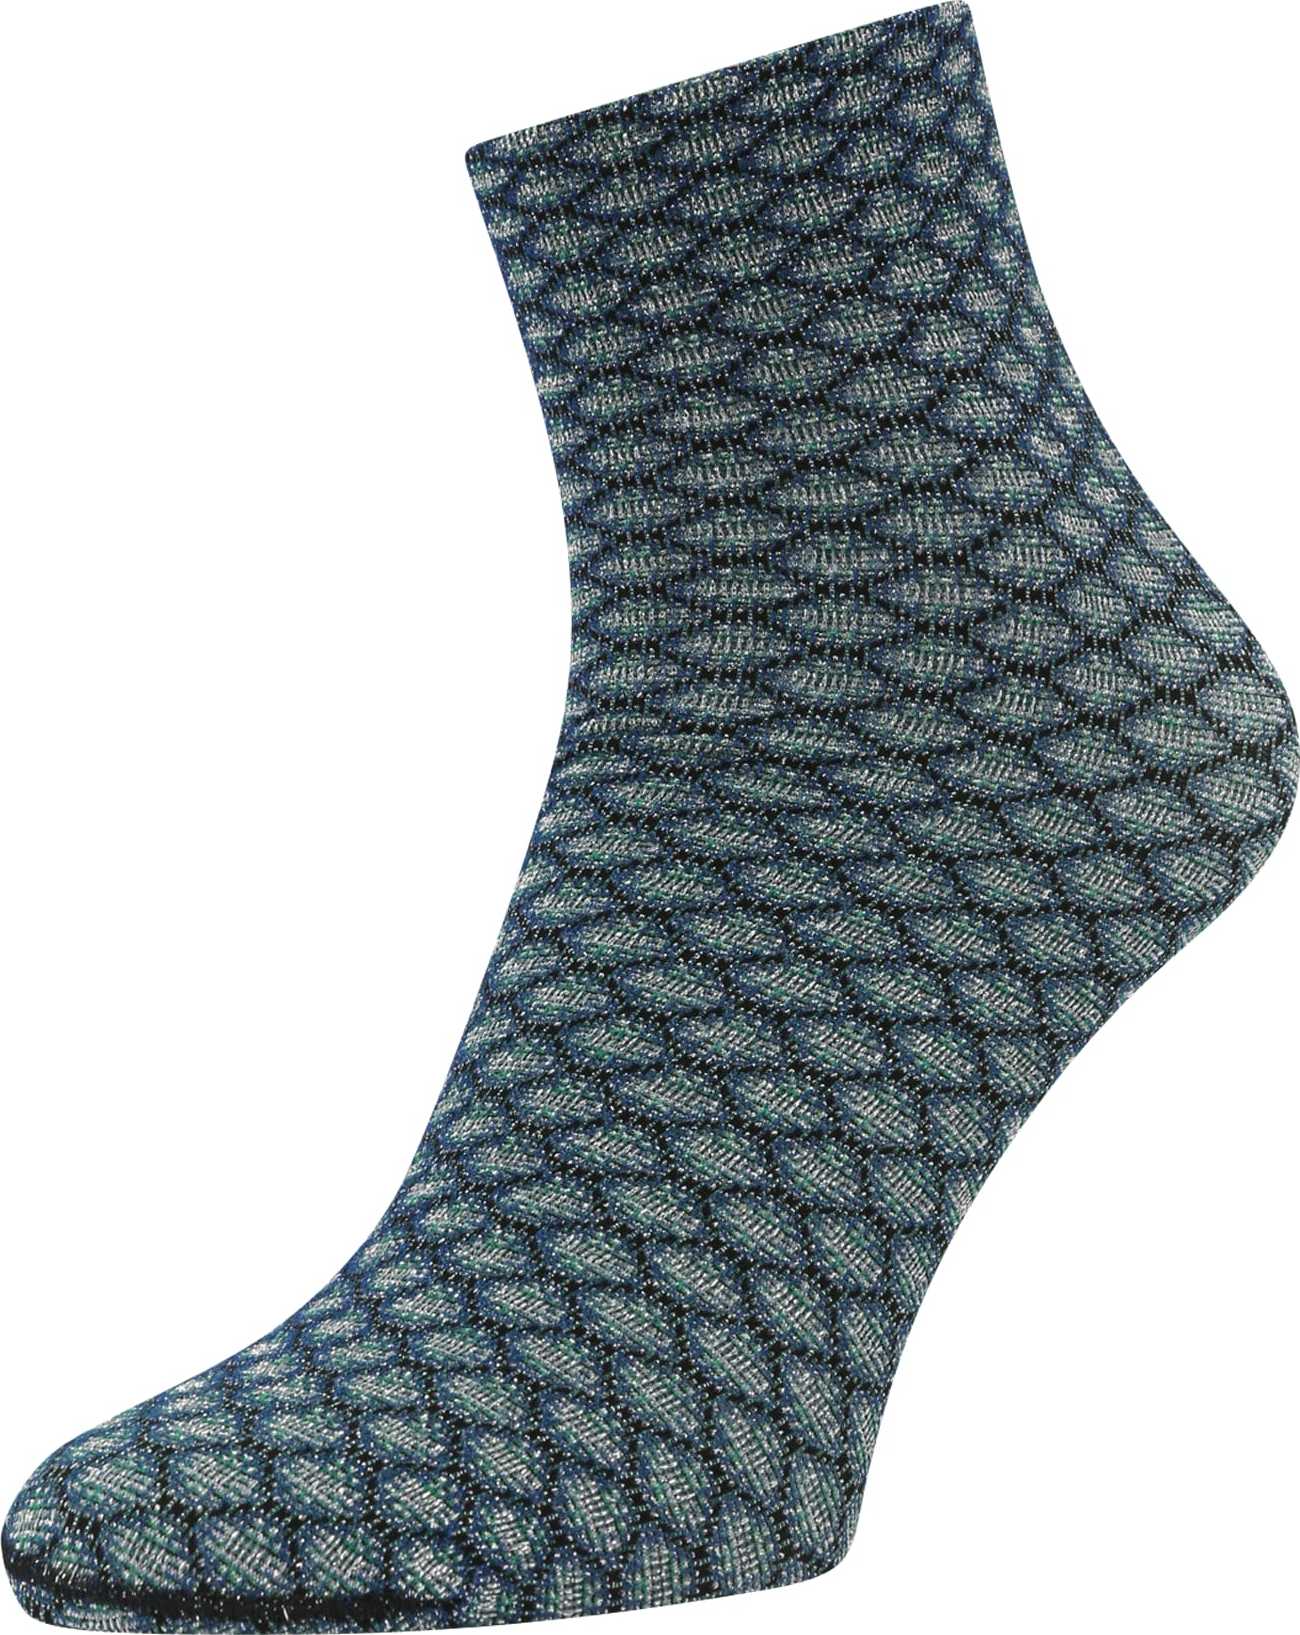 FALKE Ponožky 'Gleaming Hive' marine modrá / smaragdová / černá